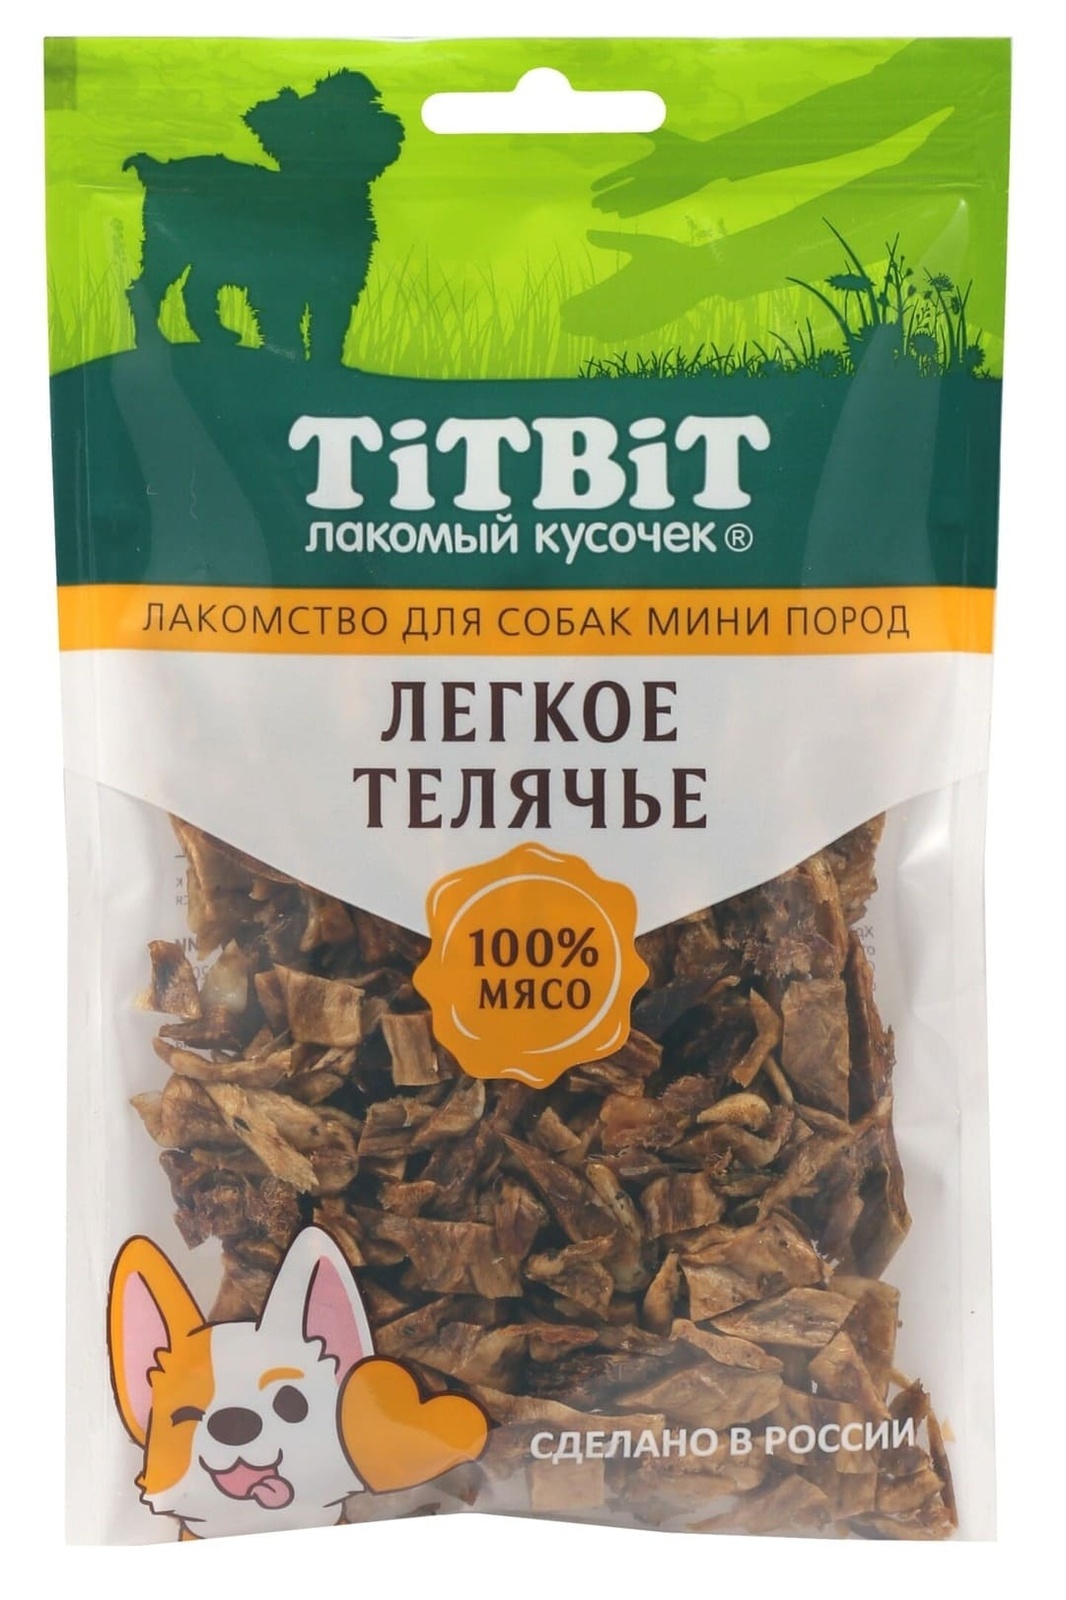 TiTBiT TiTBiT легкое телячье для собак мини пород (50 г) titbit лакомство для собак легкое телячье 50 г 2 шт